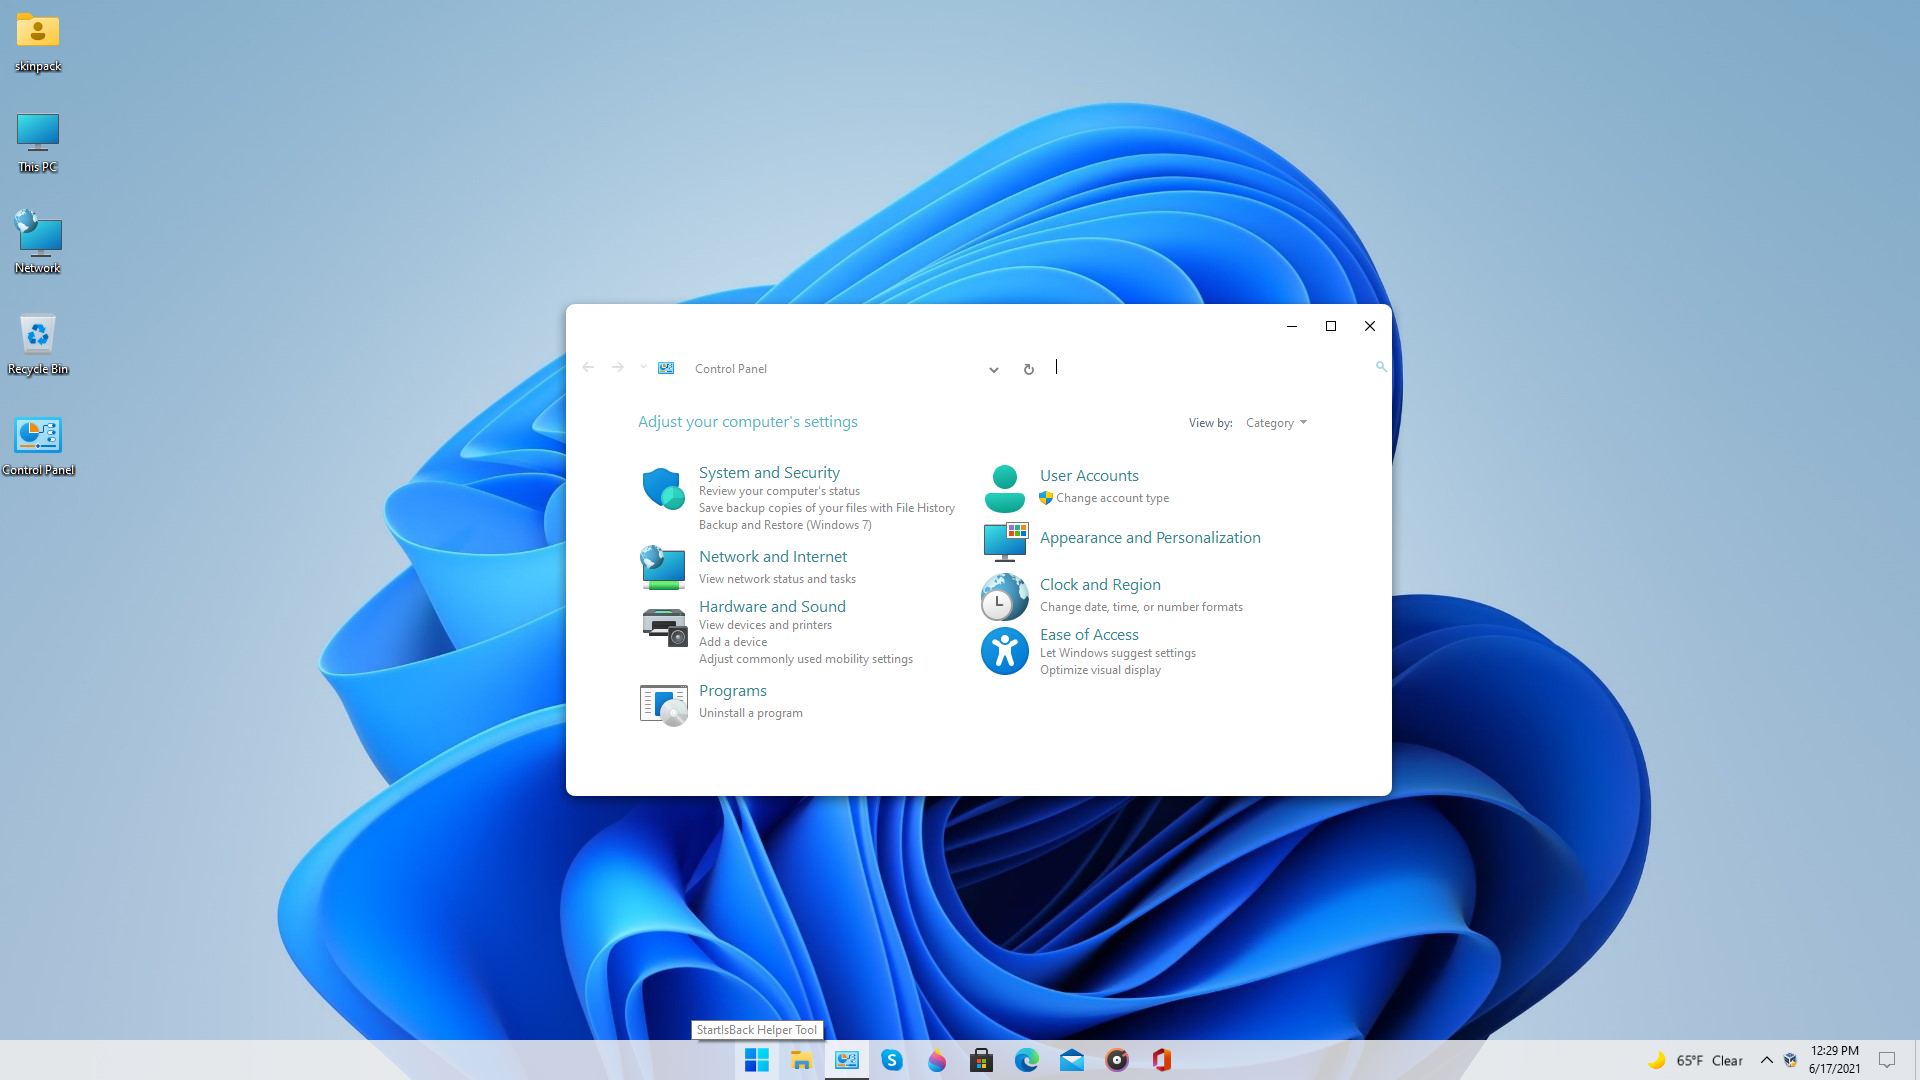 SkinPack Windows 11: Cập nhật giao diện Windows 11 ngay hôm nay với SkinPack Windows 11 - một bộ trang trí miễn phí, đầy đủ tính năng và tuyệt đẹp. Khám phá các tính năng mới của Windows 11 với giao diện thú vị và đẹp mắt, từ bảng điều khiển màu sắc cho đến hình nền và icon. Thưởng thức trải nghiệm Windows 11 một cách đầy đủ hơn với SkinPack Windows